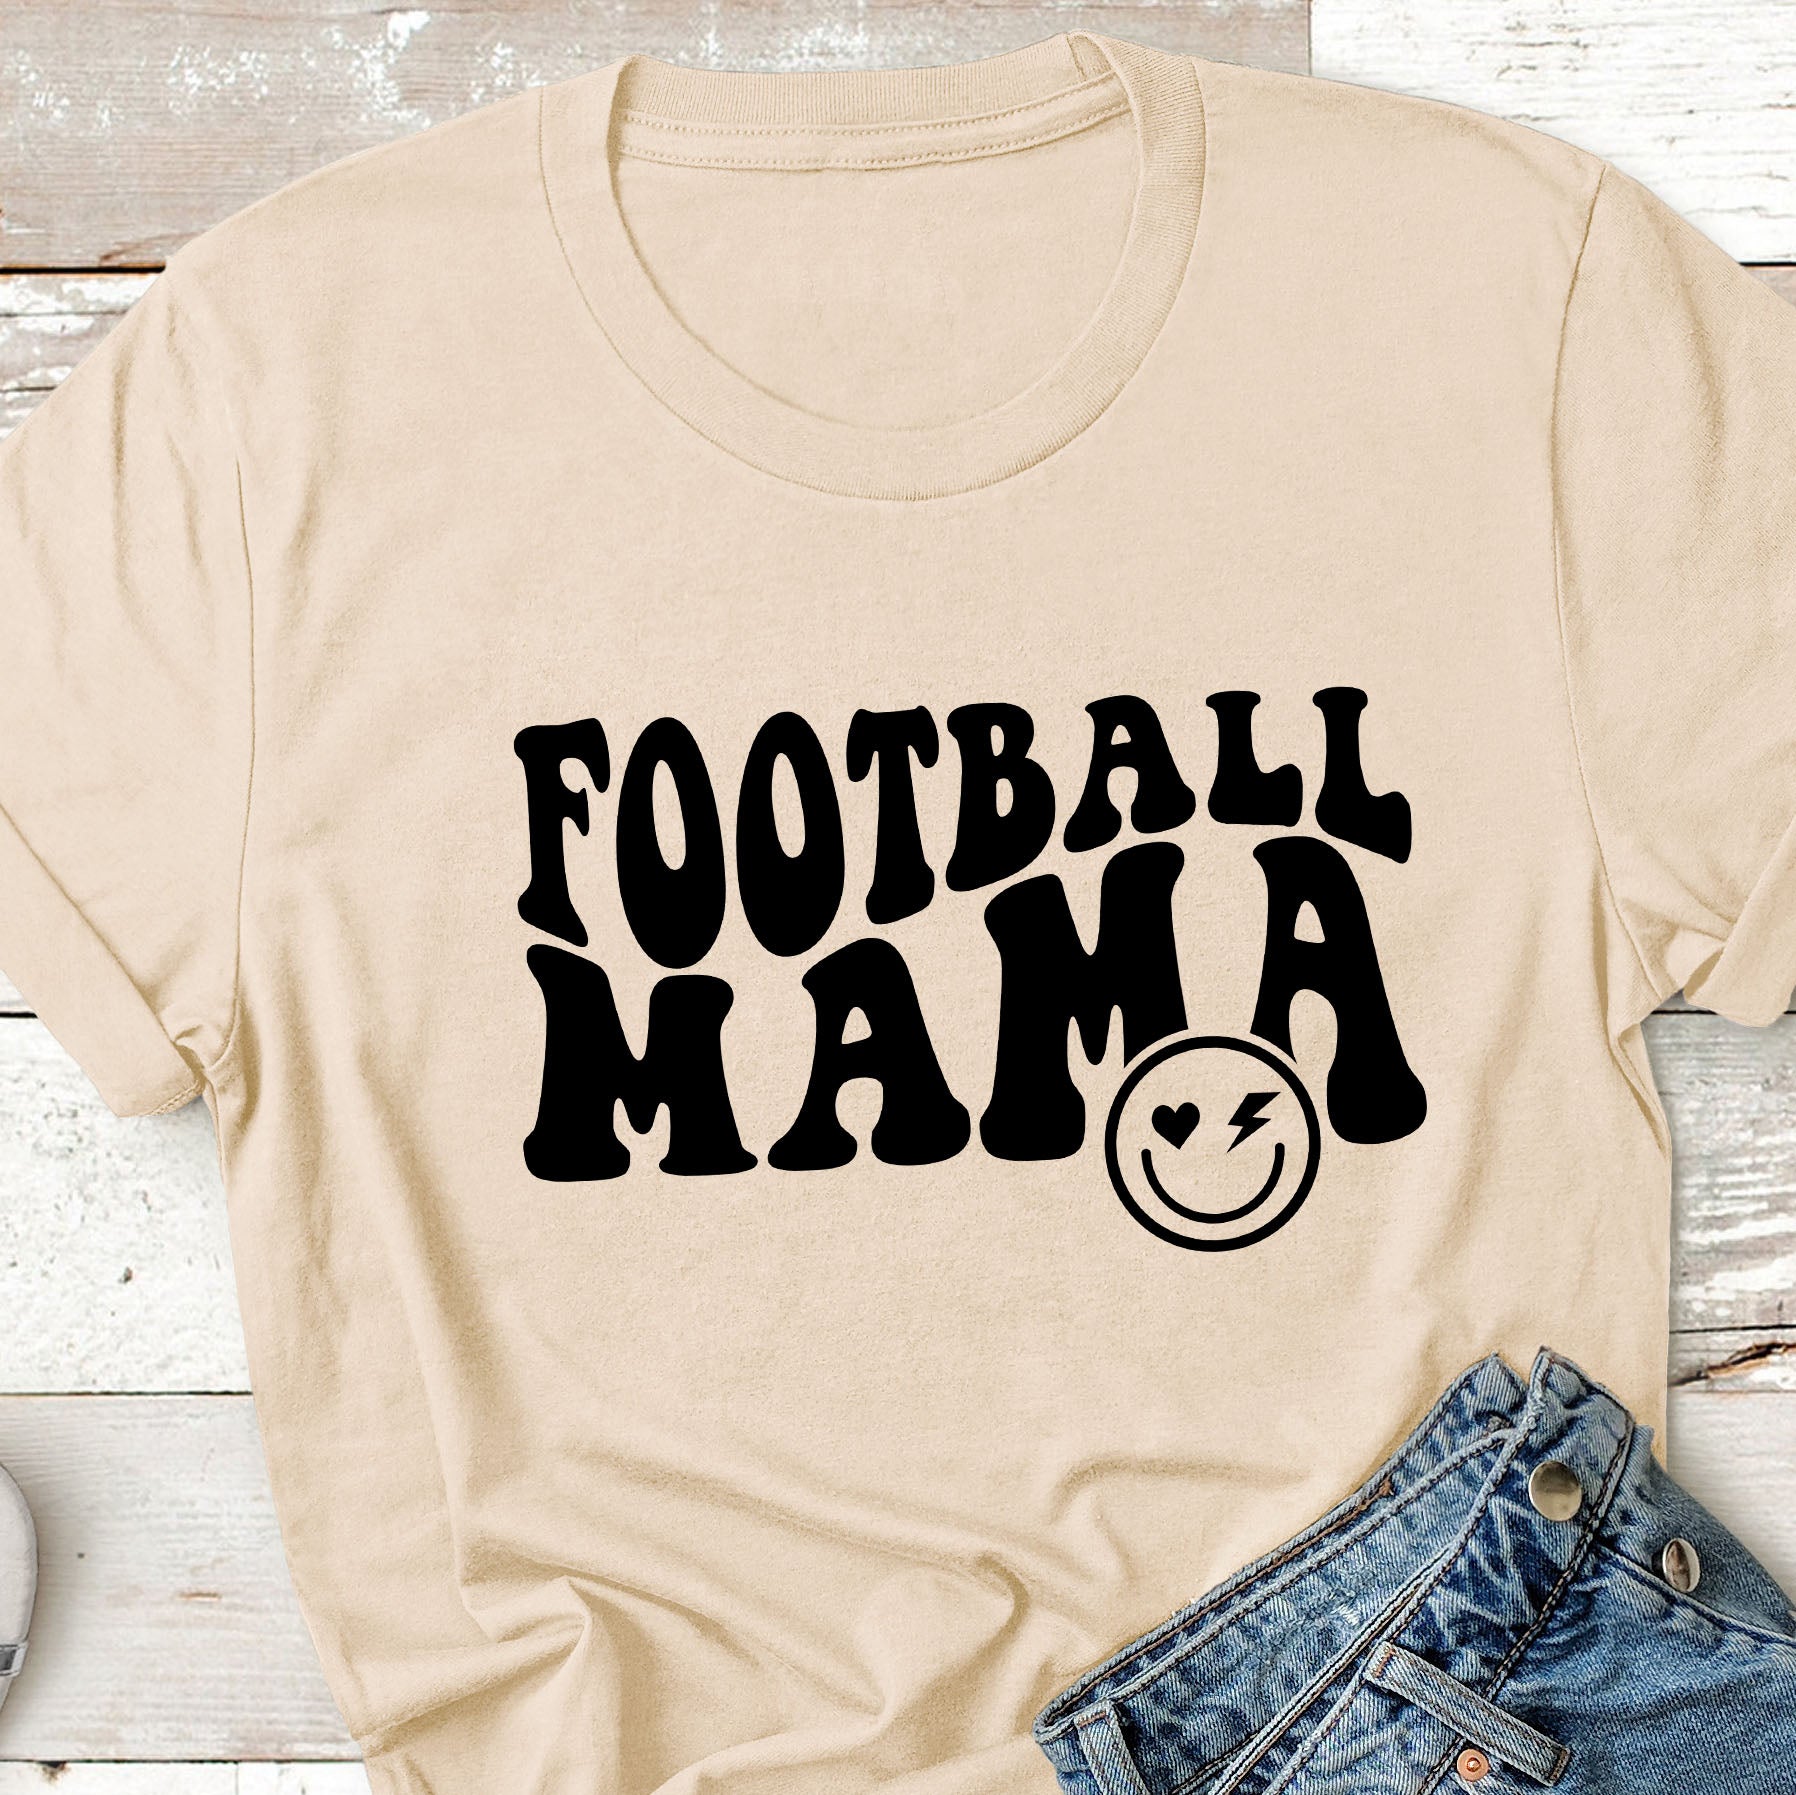 Football Mom Retro Wave T-Shirt, Sweatshirt, or Hoodie